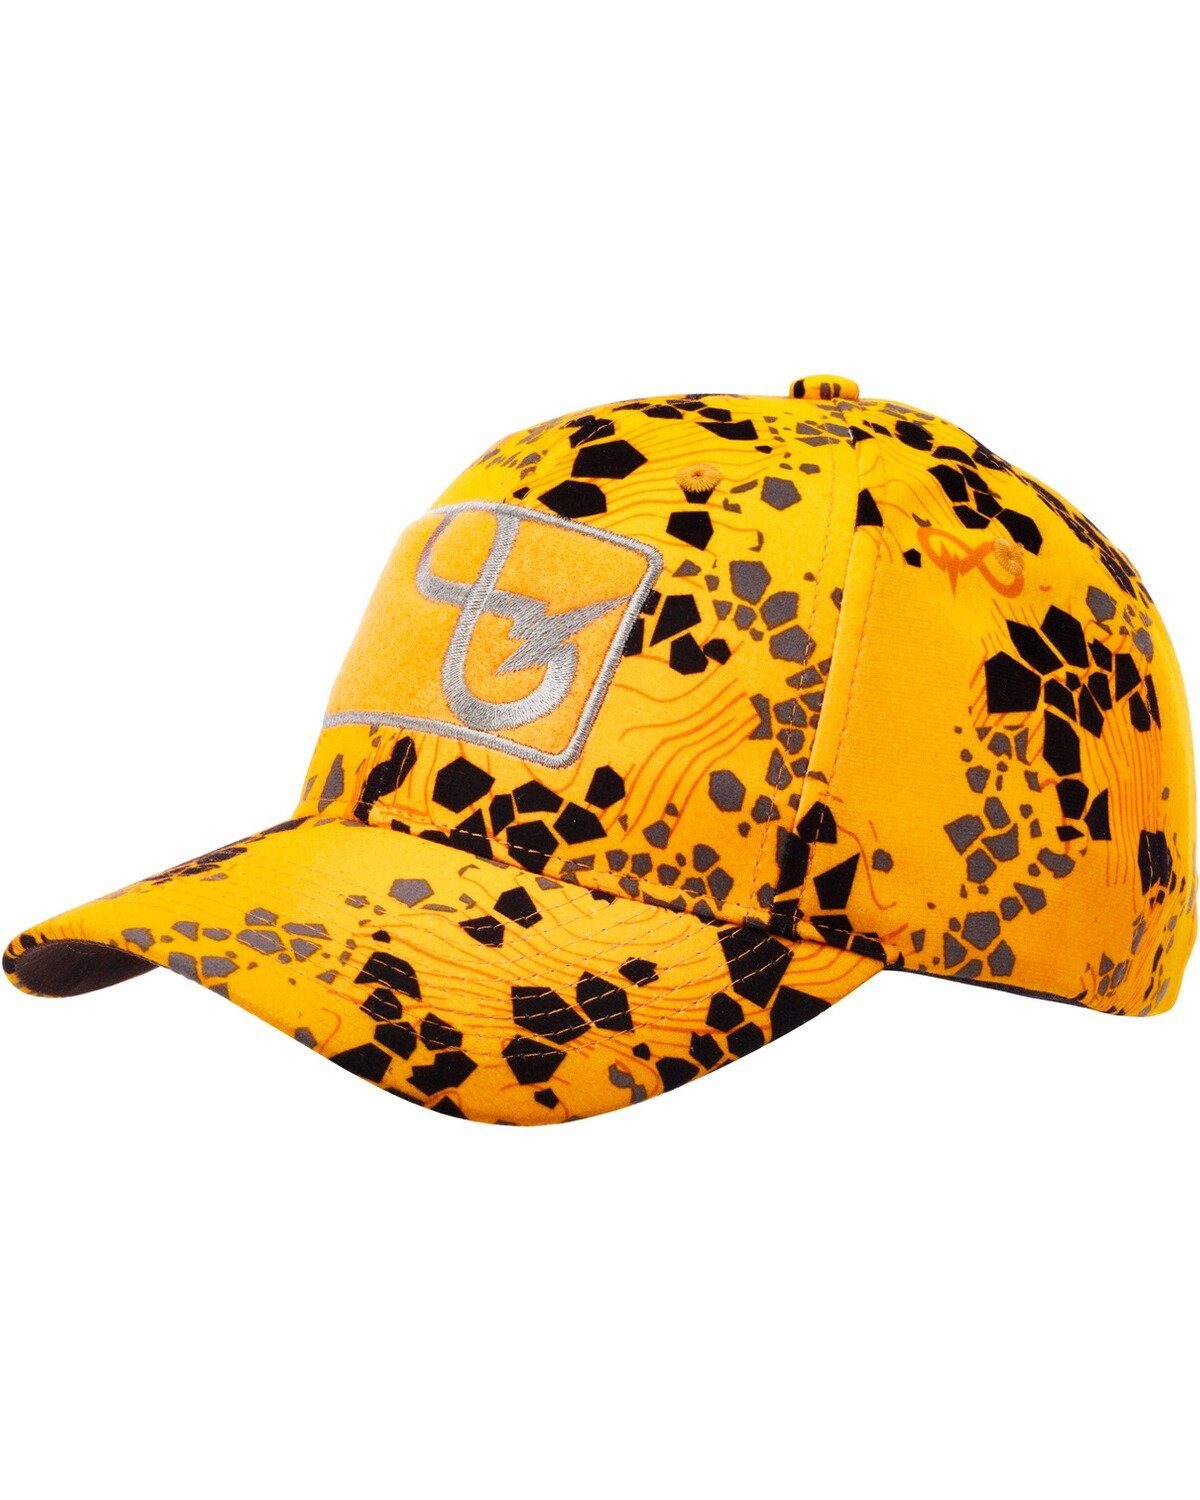 Merkel Gear Baseball Cap Cap Infinity-Fire | Baseball Caps